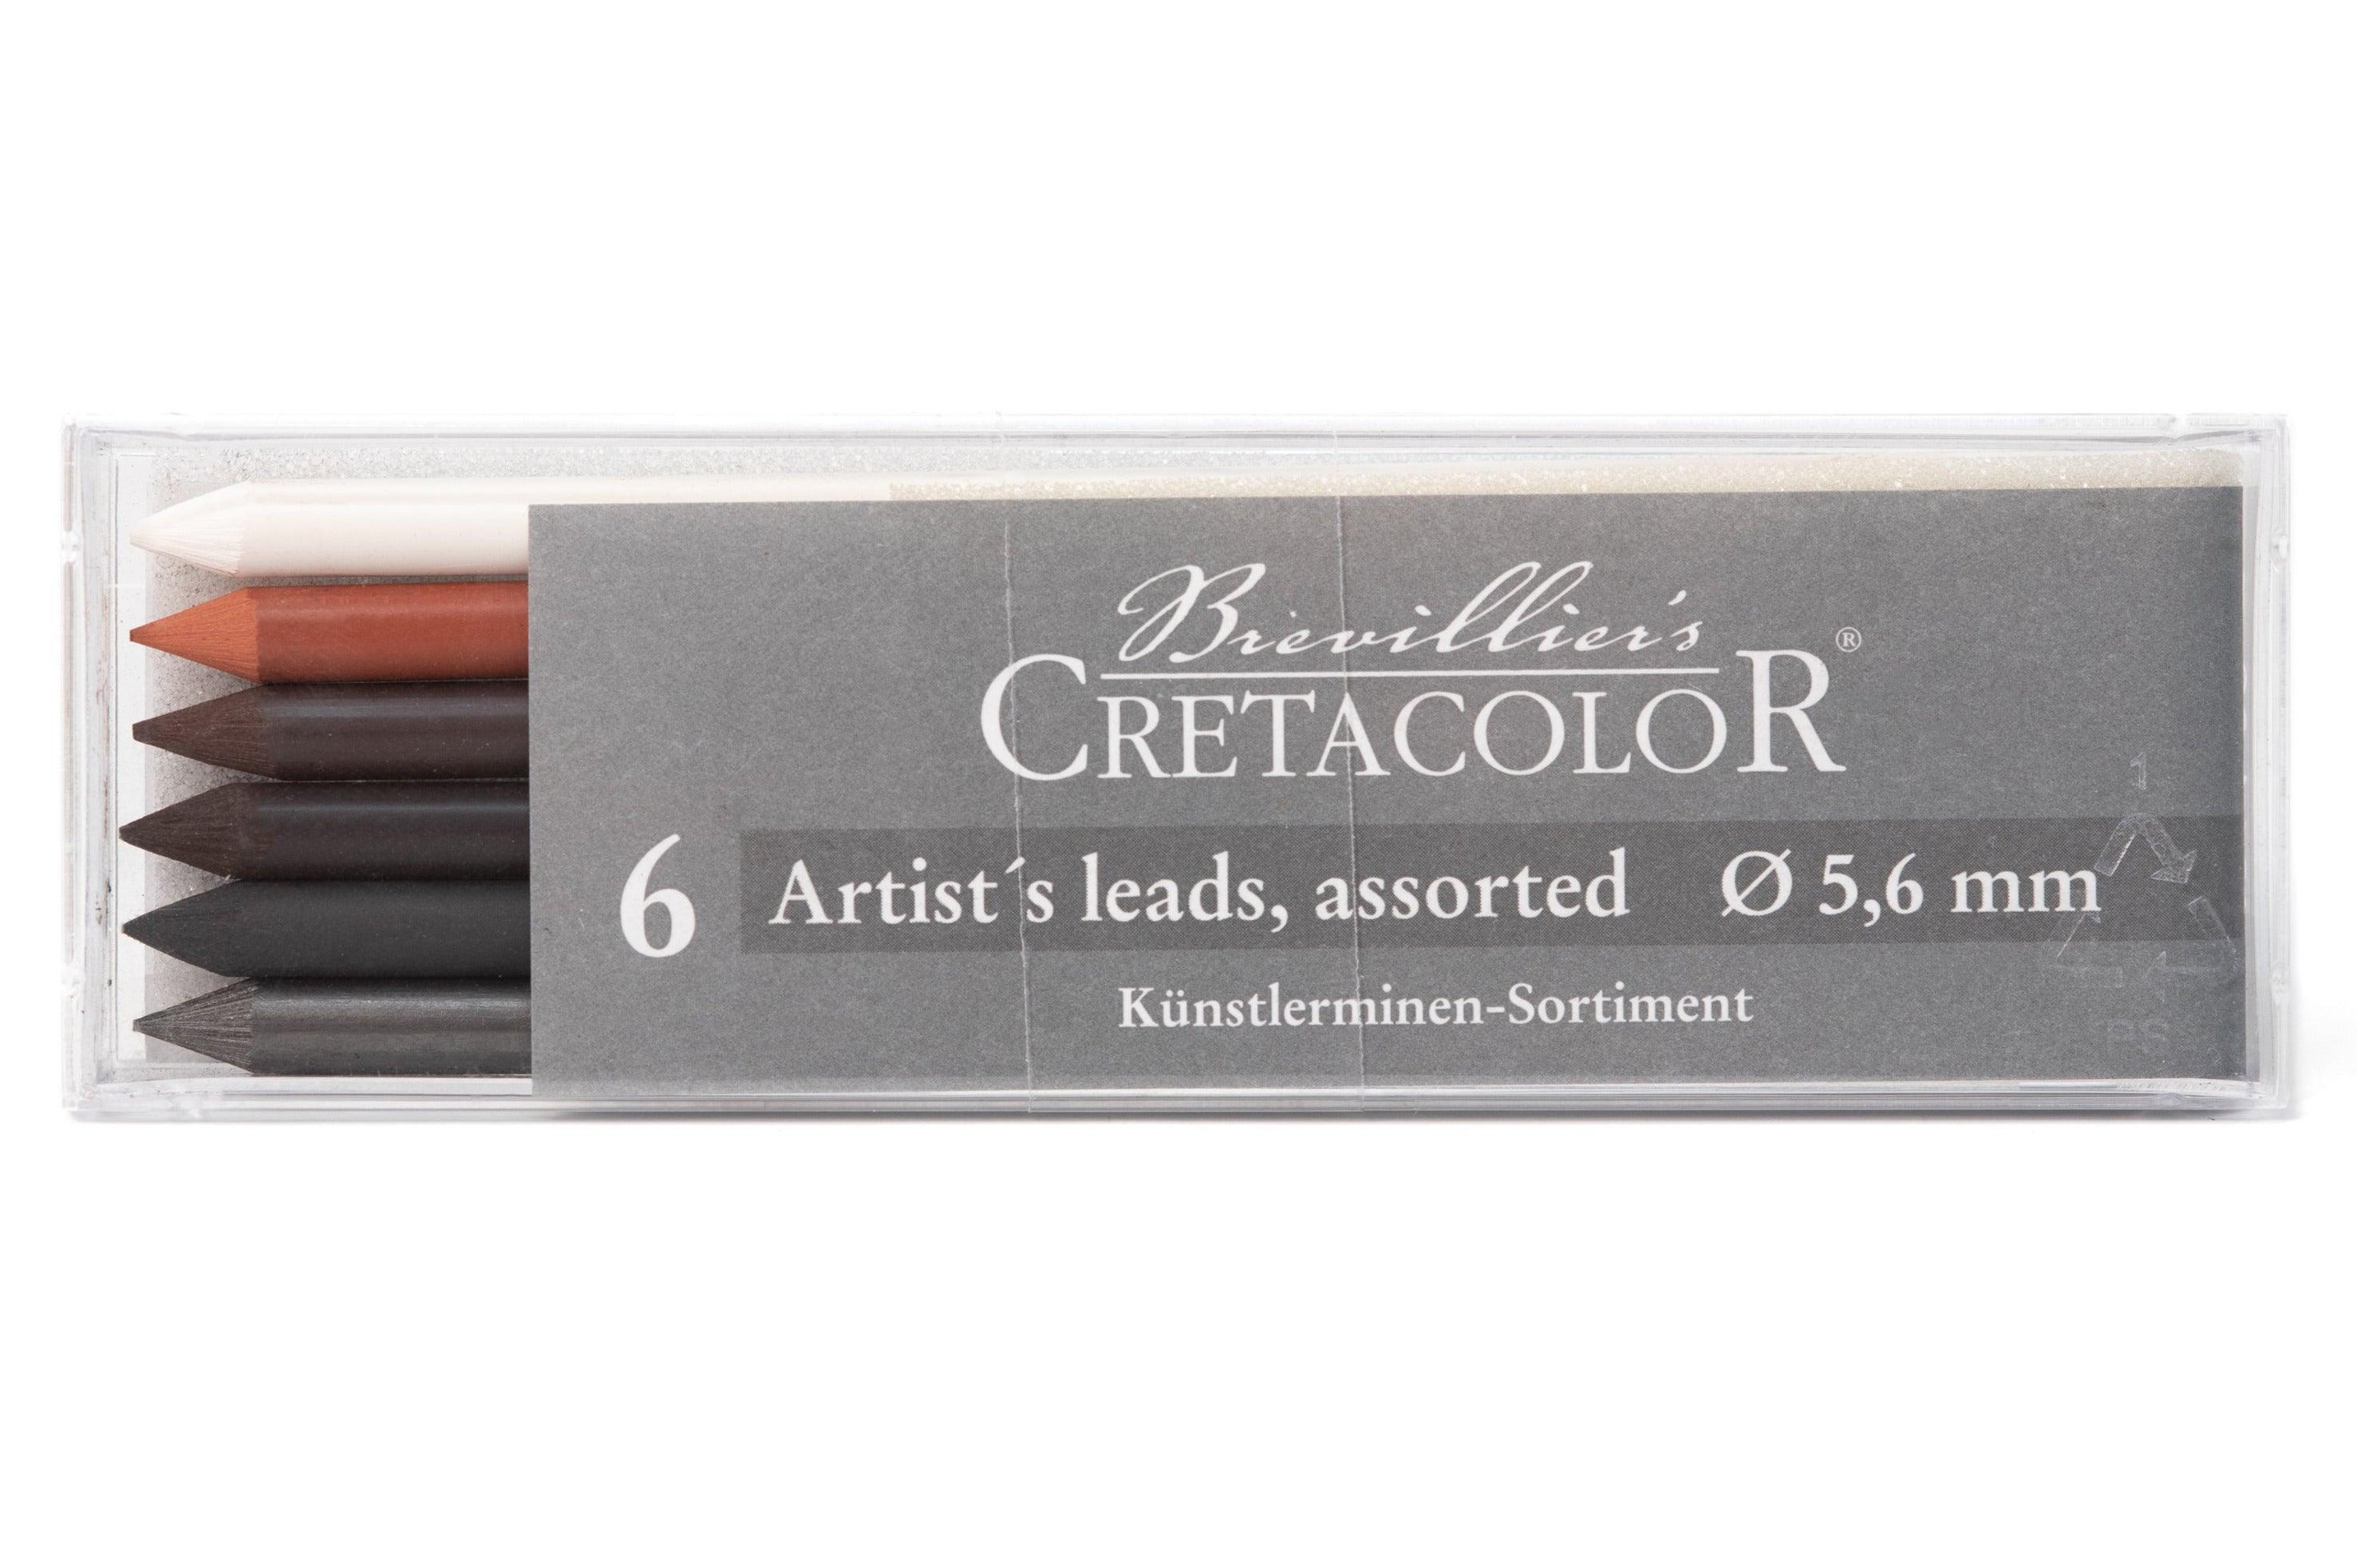 Cretacolor watercolor pencils, 12 piece